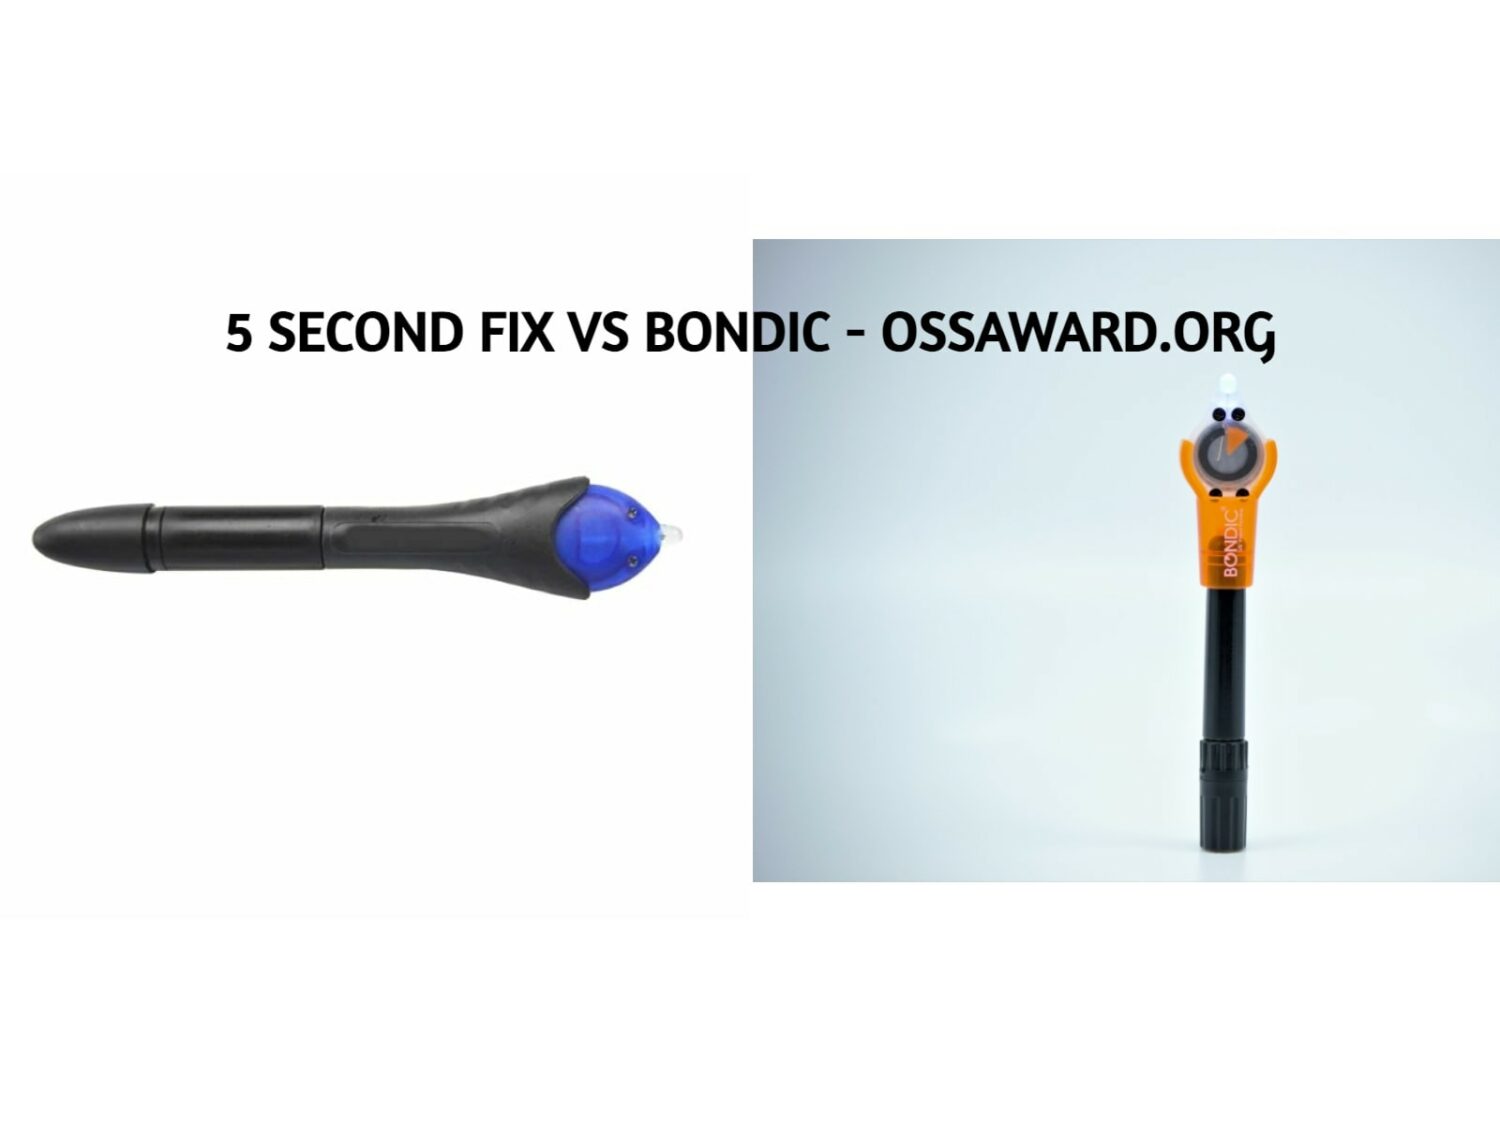 5 Second Fix vs Bondic - Comparison